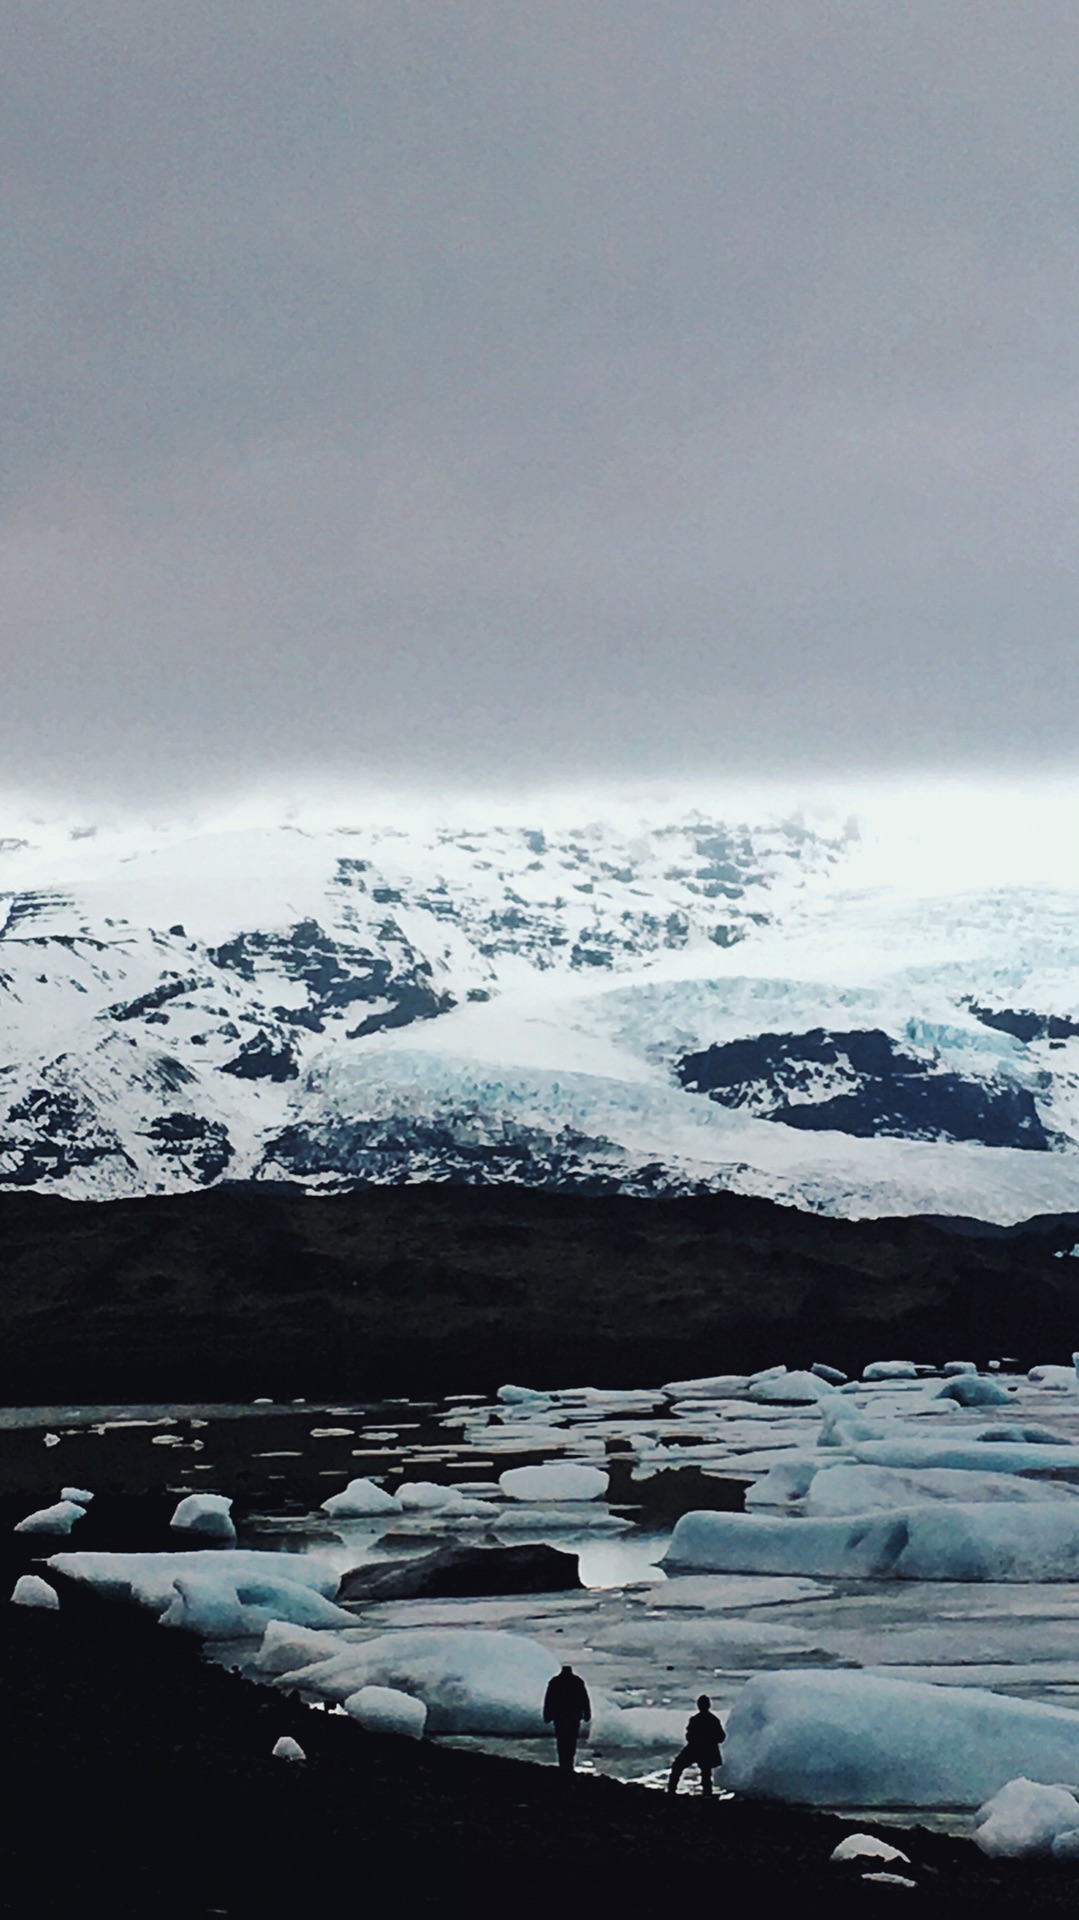 高冷冰岛与温暖的人 看遍自然的壮美景色 (欧游行迹e